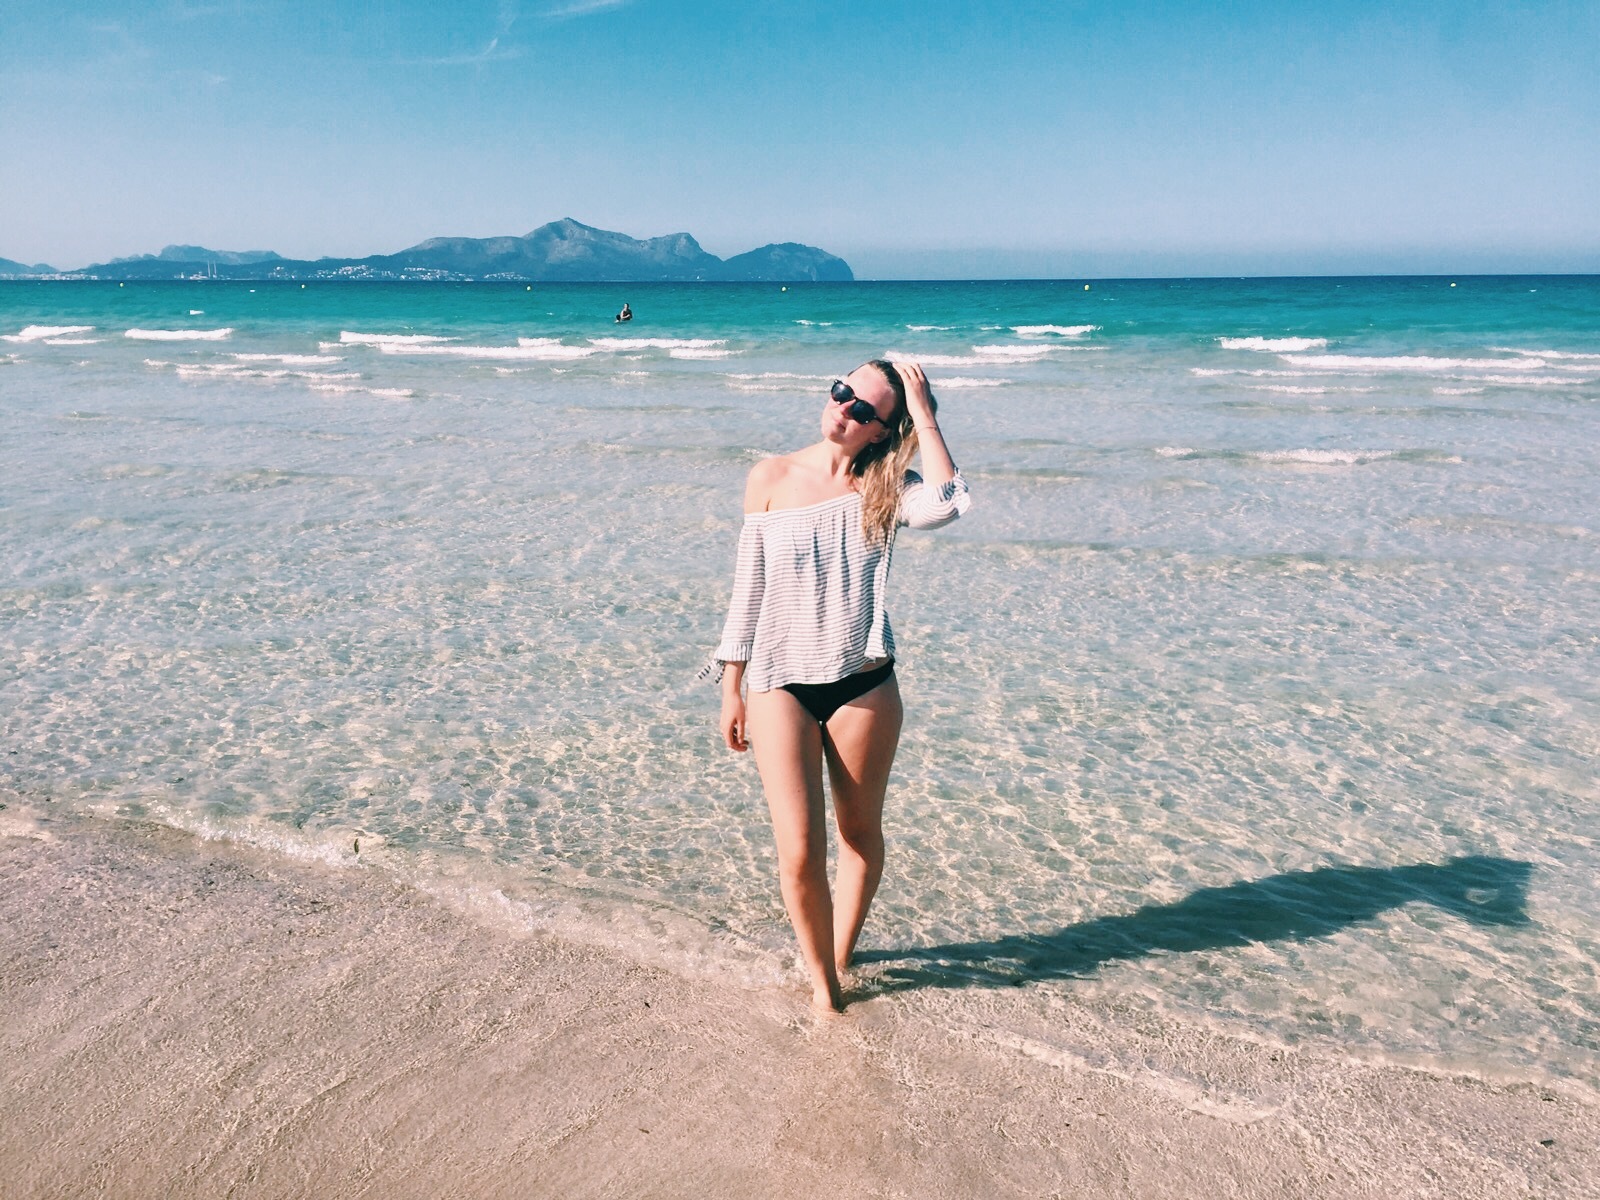 Die schönsten Strände Mallorcas - Mallorca Strand - Alcudia - Mallorca - Sommerurlaub Mallorca - Miss Phiaselle - Reisen - Reiseblogger - Meerwasser - Beautiful